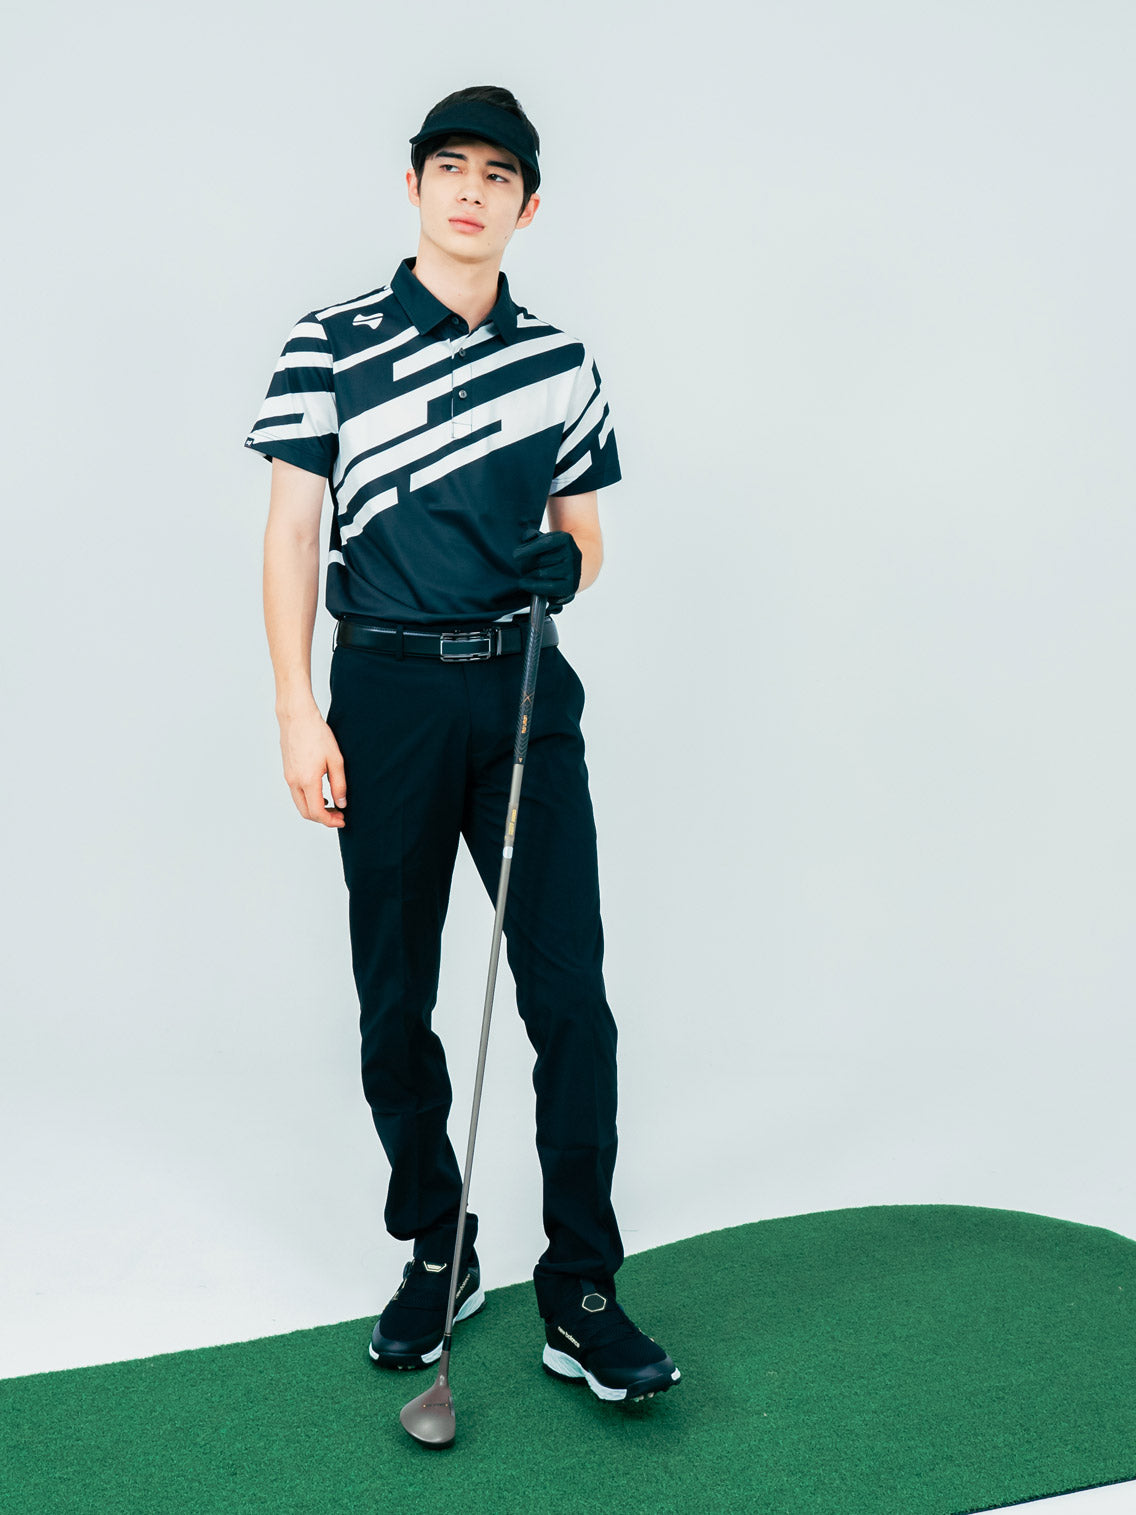 【お求めやすい価格になりました】メンズスラッシュゴルフ半袖ポロシャツ-ブラック